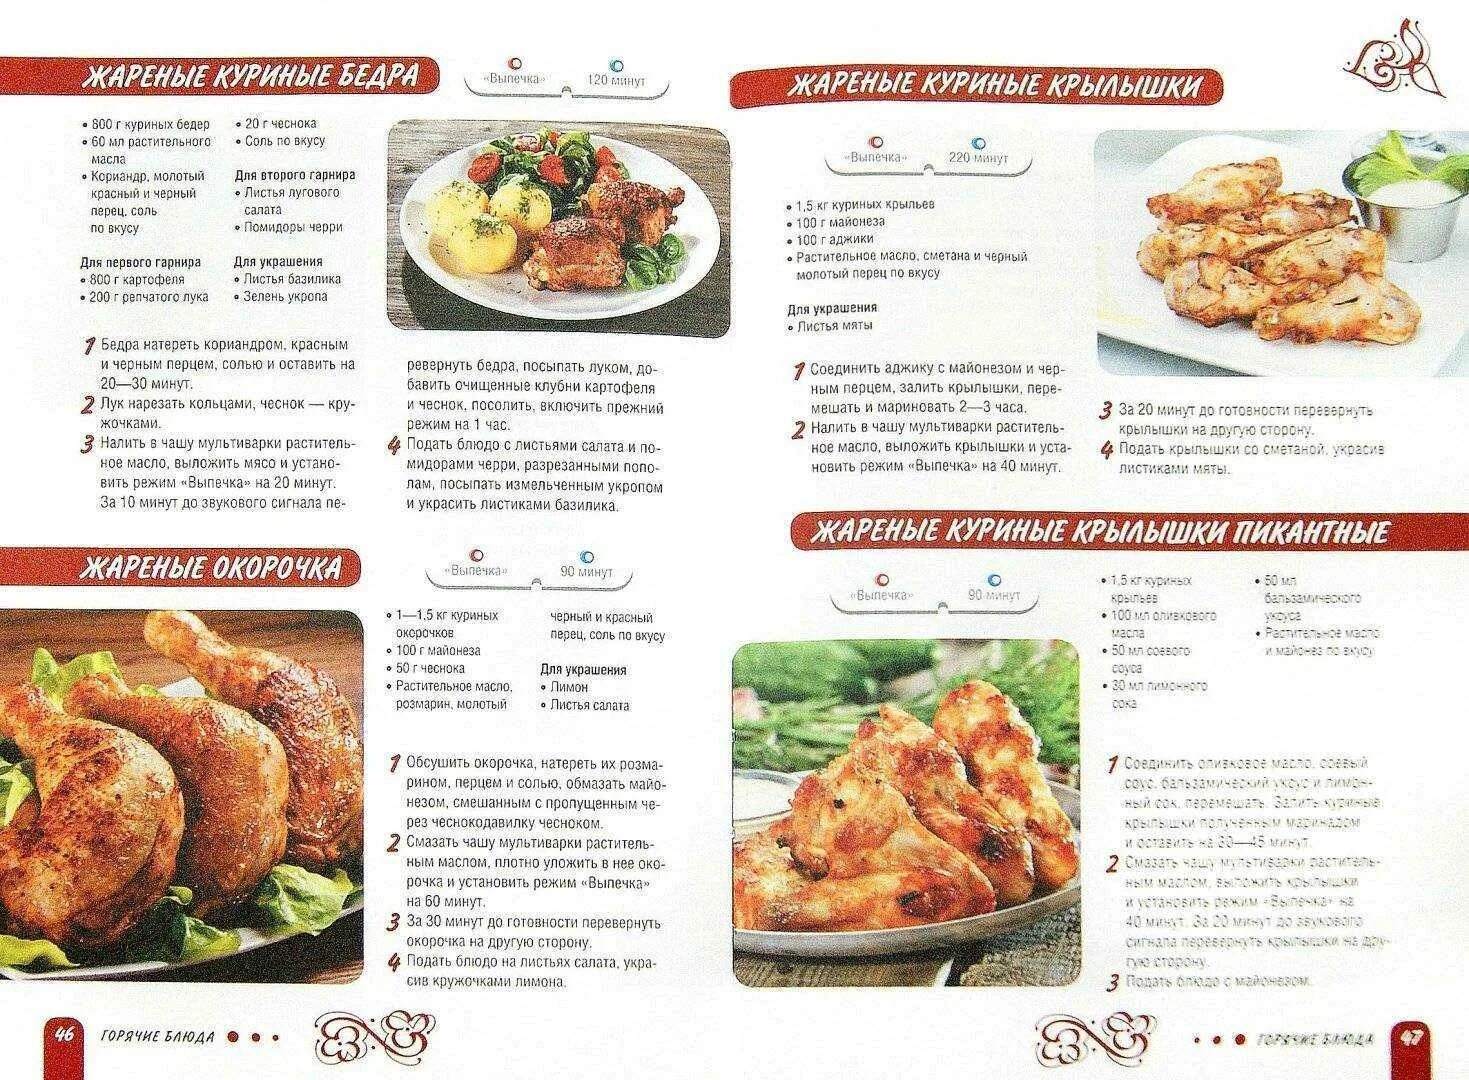 Рецепты вторых блюд с описанием. Рецепты горячих блюд с описанием. Картинки рецепты блюд. Рецепты блюд в картинках с описанием. Напечатанные рецепты